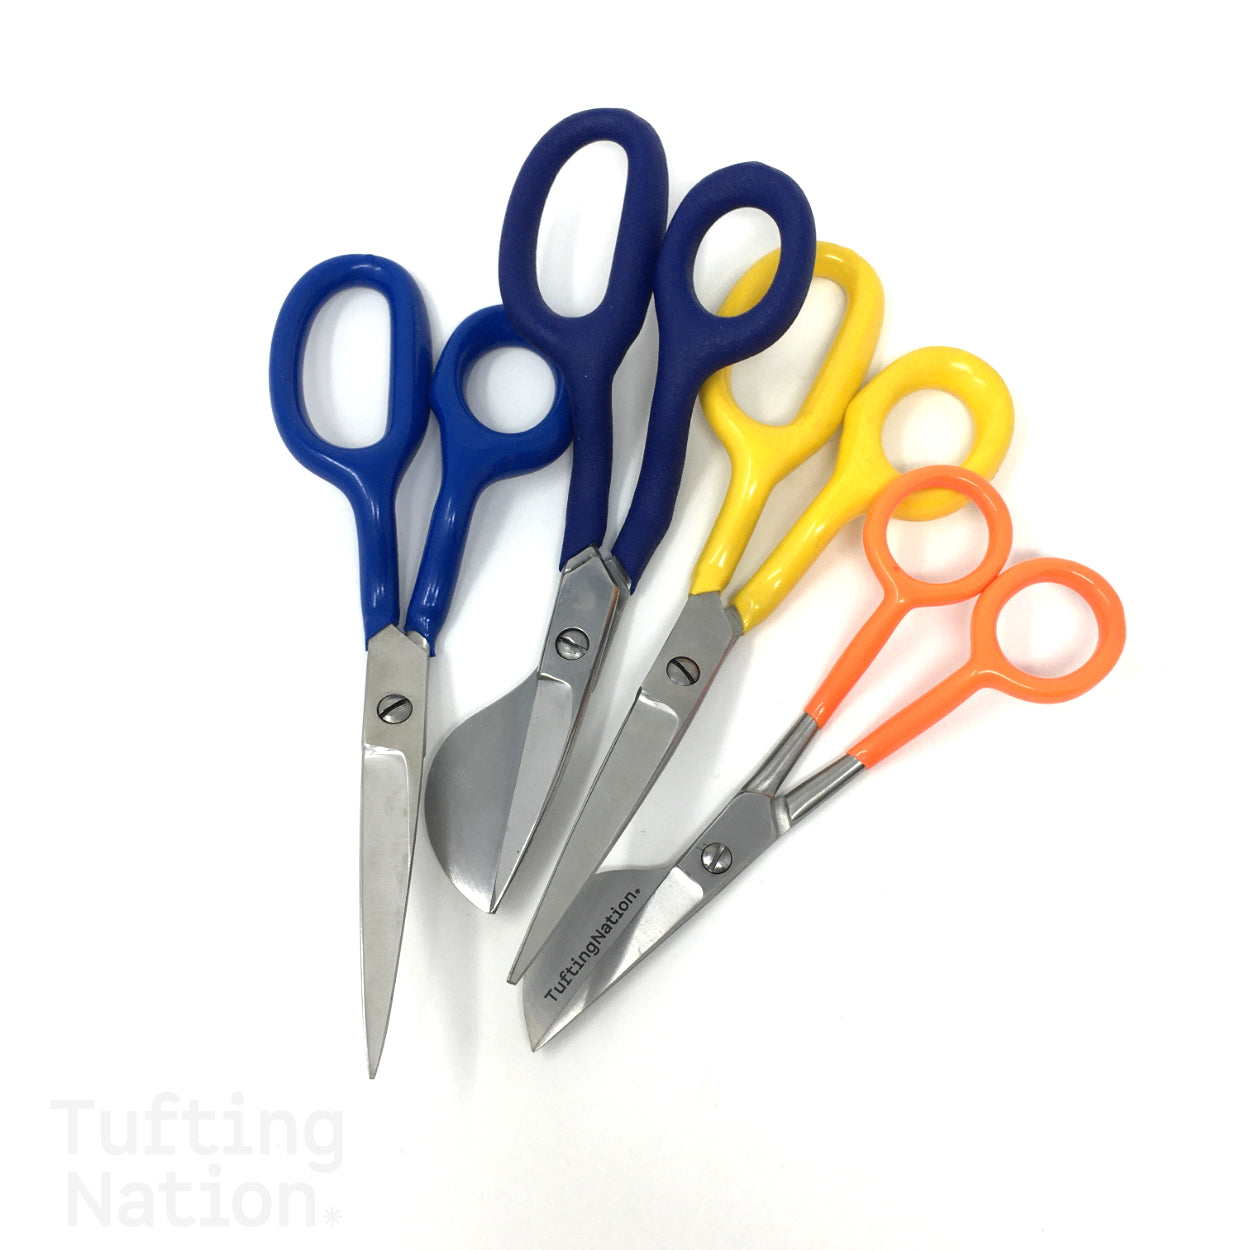 7 Duckbill Scissors for Rug Making